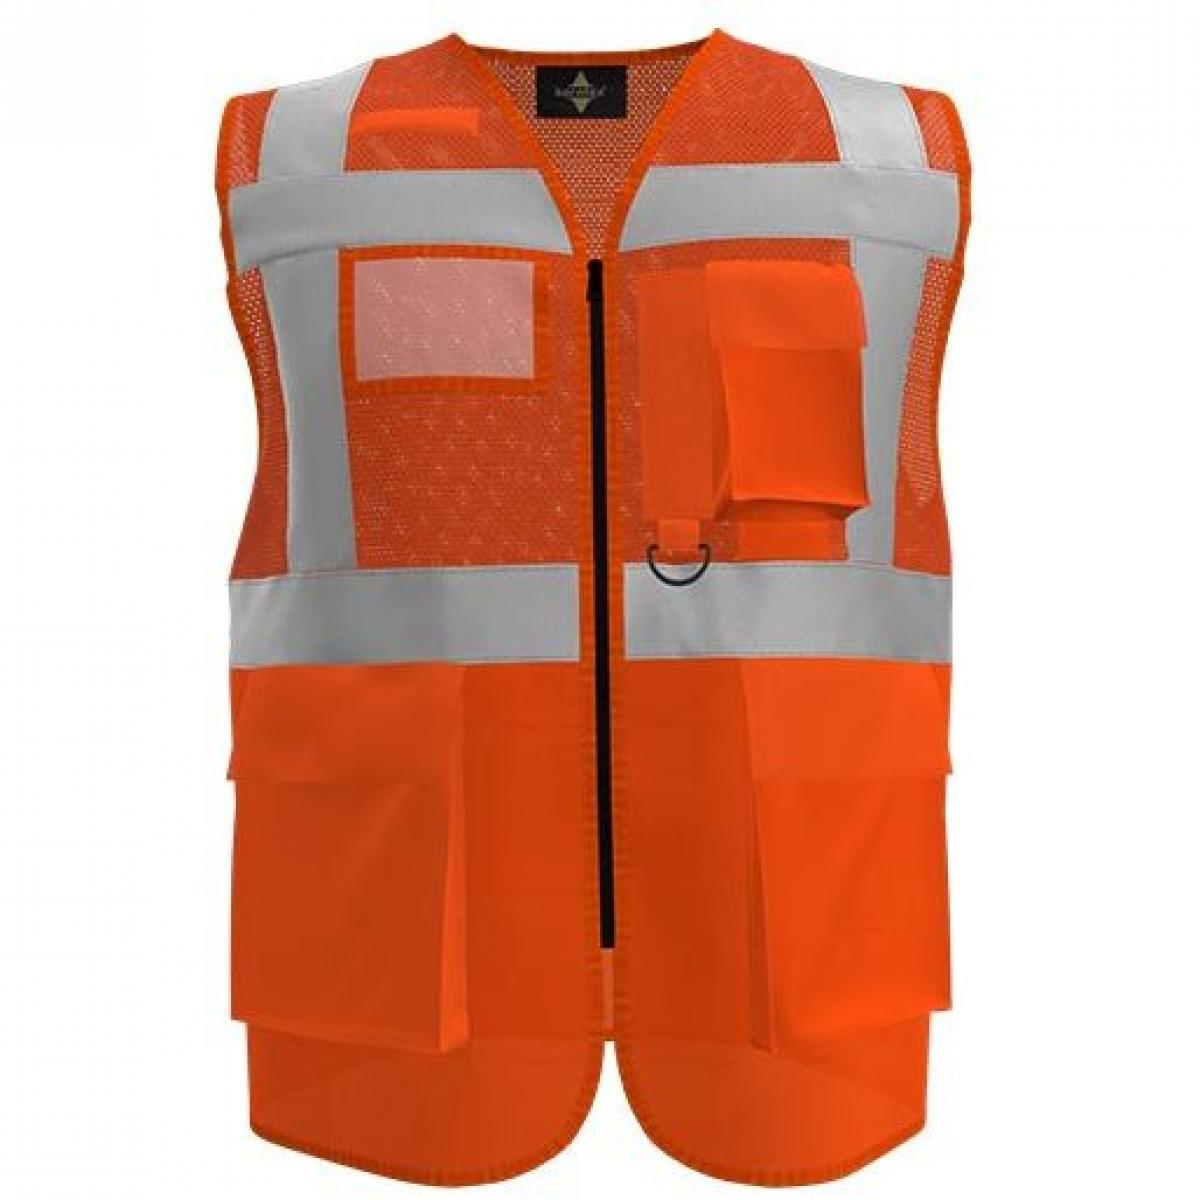 Hersteller: Korntex Herstellernummer: KXEXQ Artikelbezeichnung: Multifunkitons-Warnweste Mesh Multifunction Vest Farbe: Signal Orange